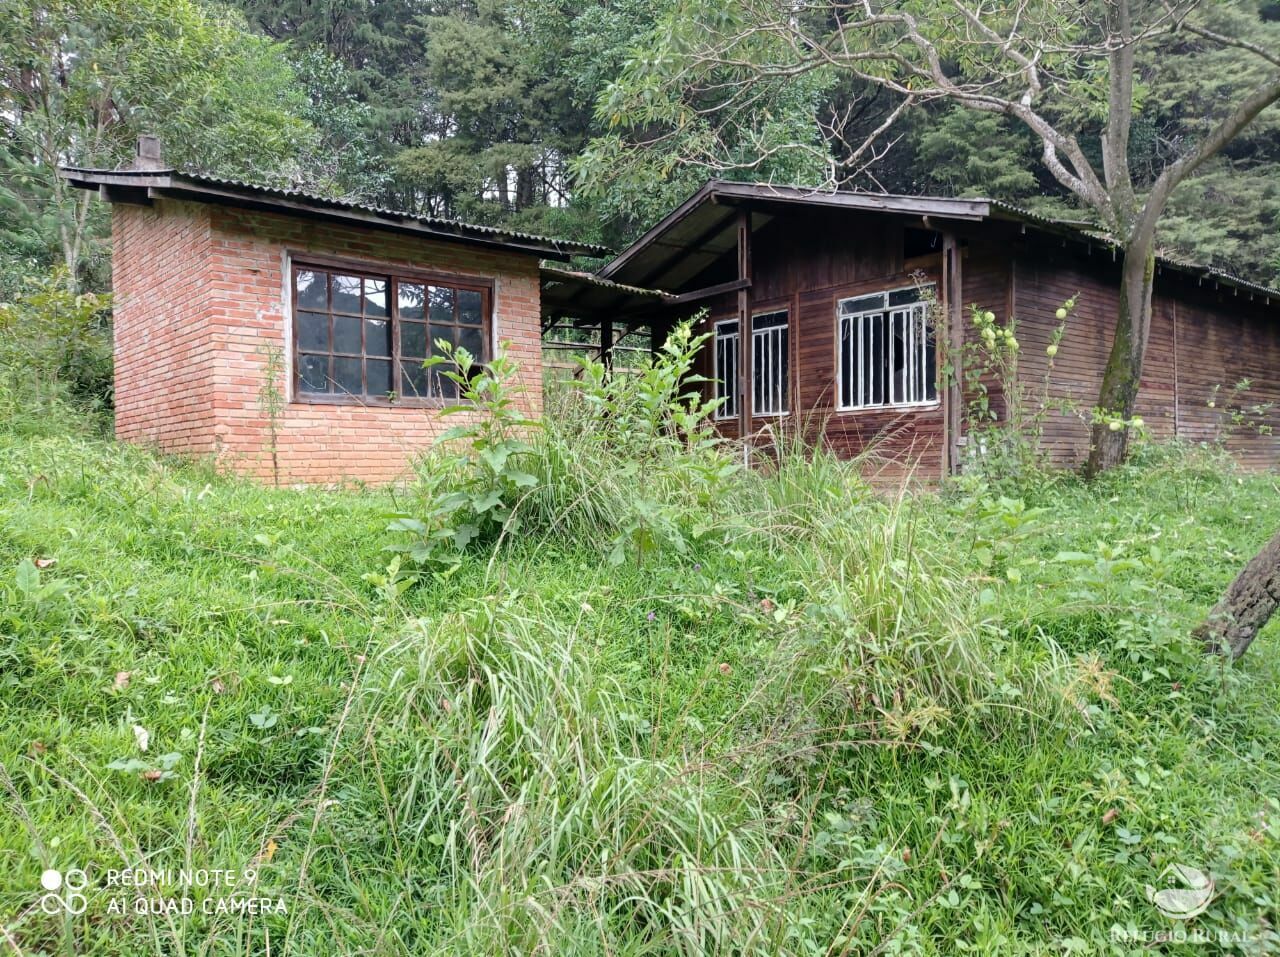 Fazenda de 66 ha em São José dos Campos, SP